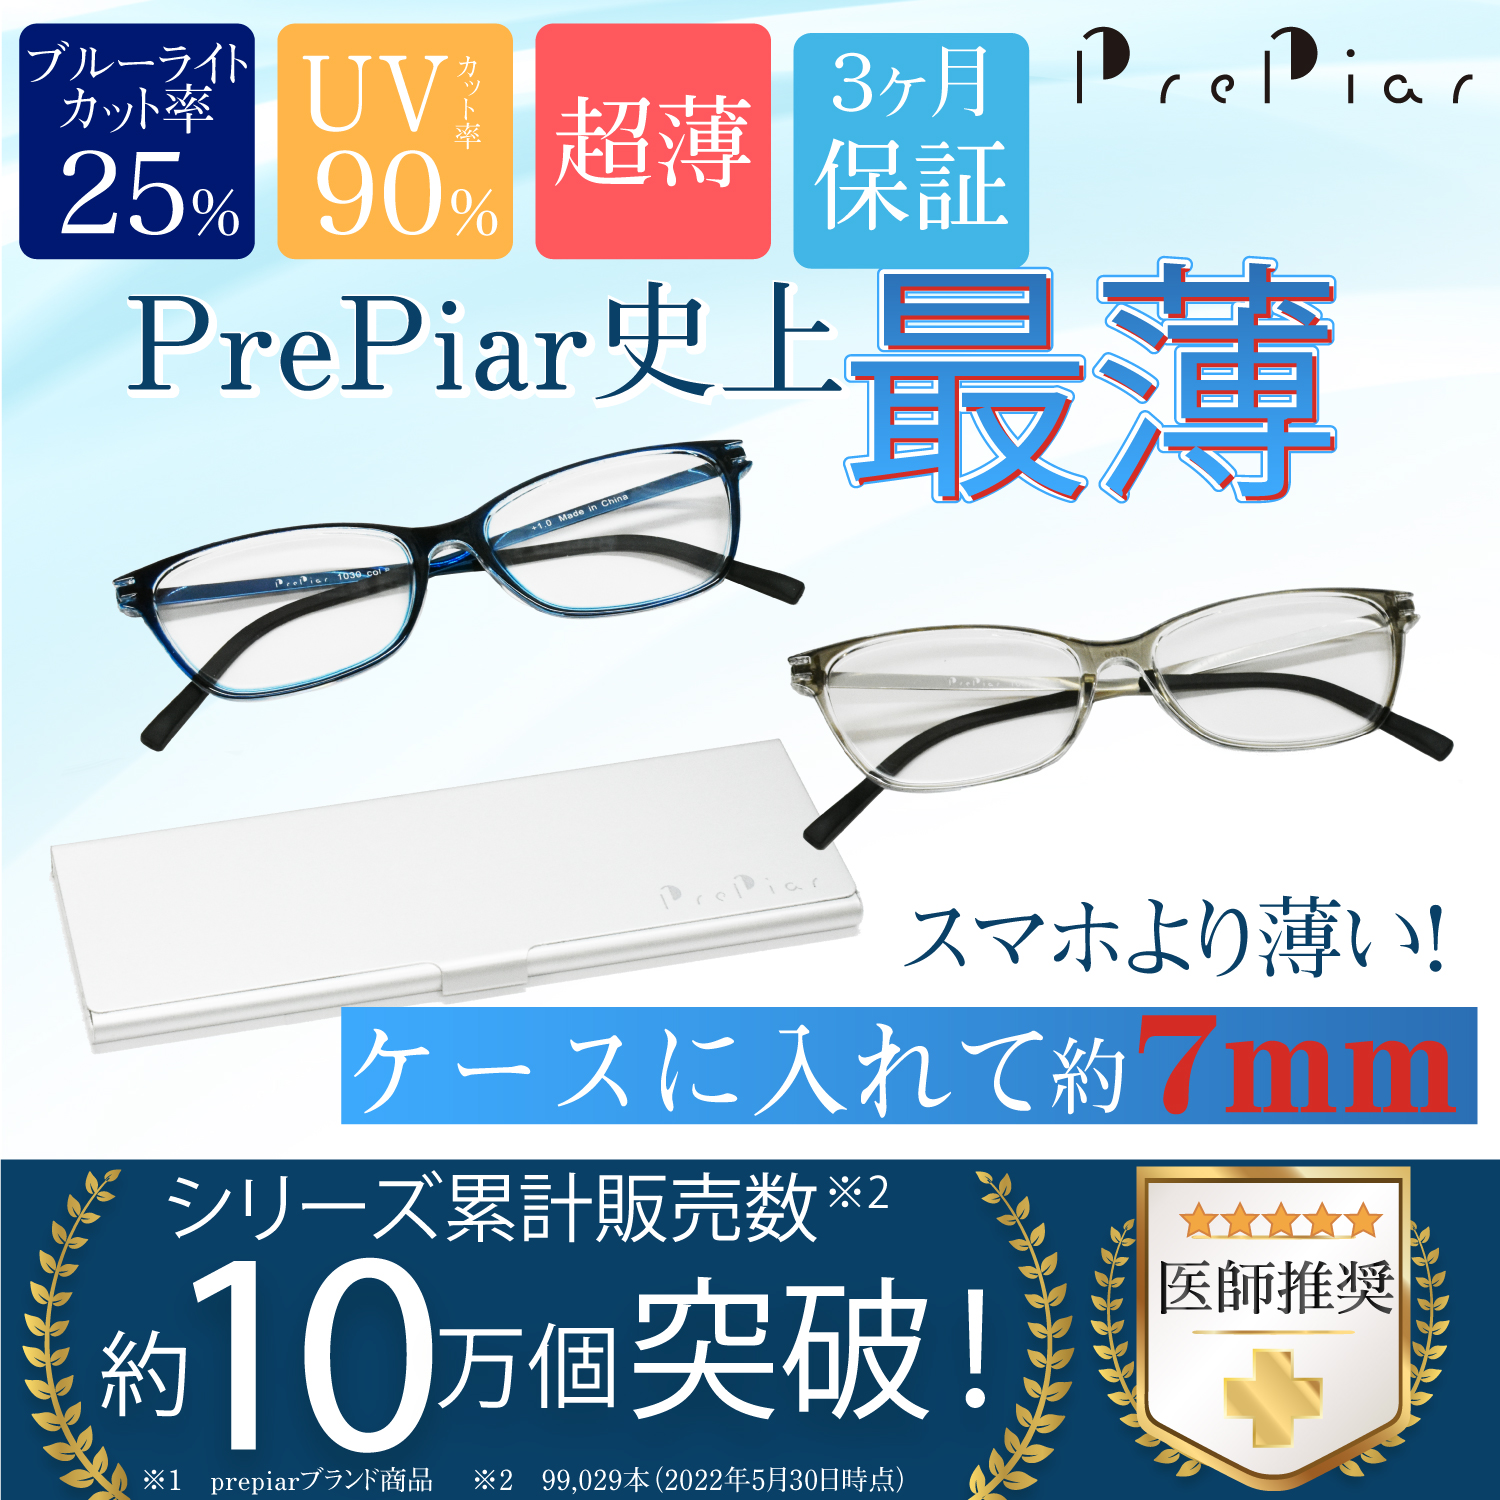 老眼鏡 超薄型 おしゃれ ブルーライトカット メガネ 3ヶ月保証 ケース付き 軽量 UVカットPrePiar